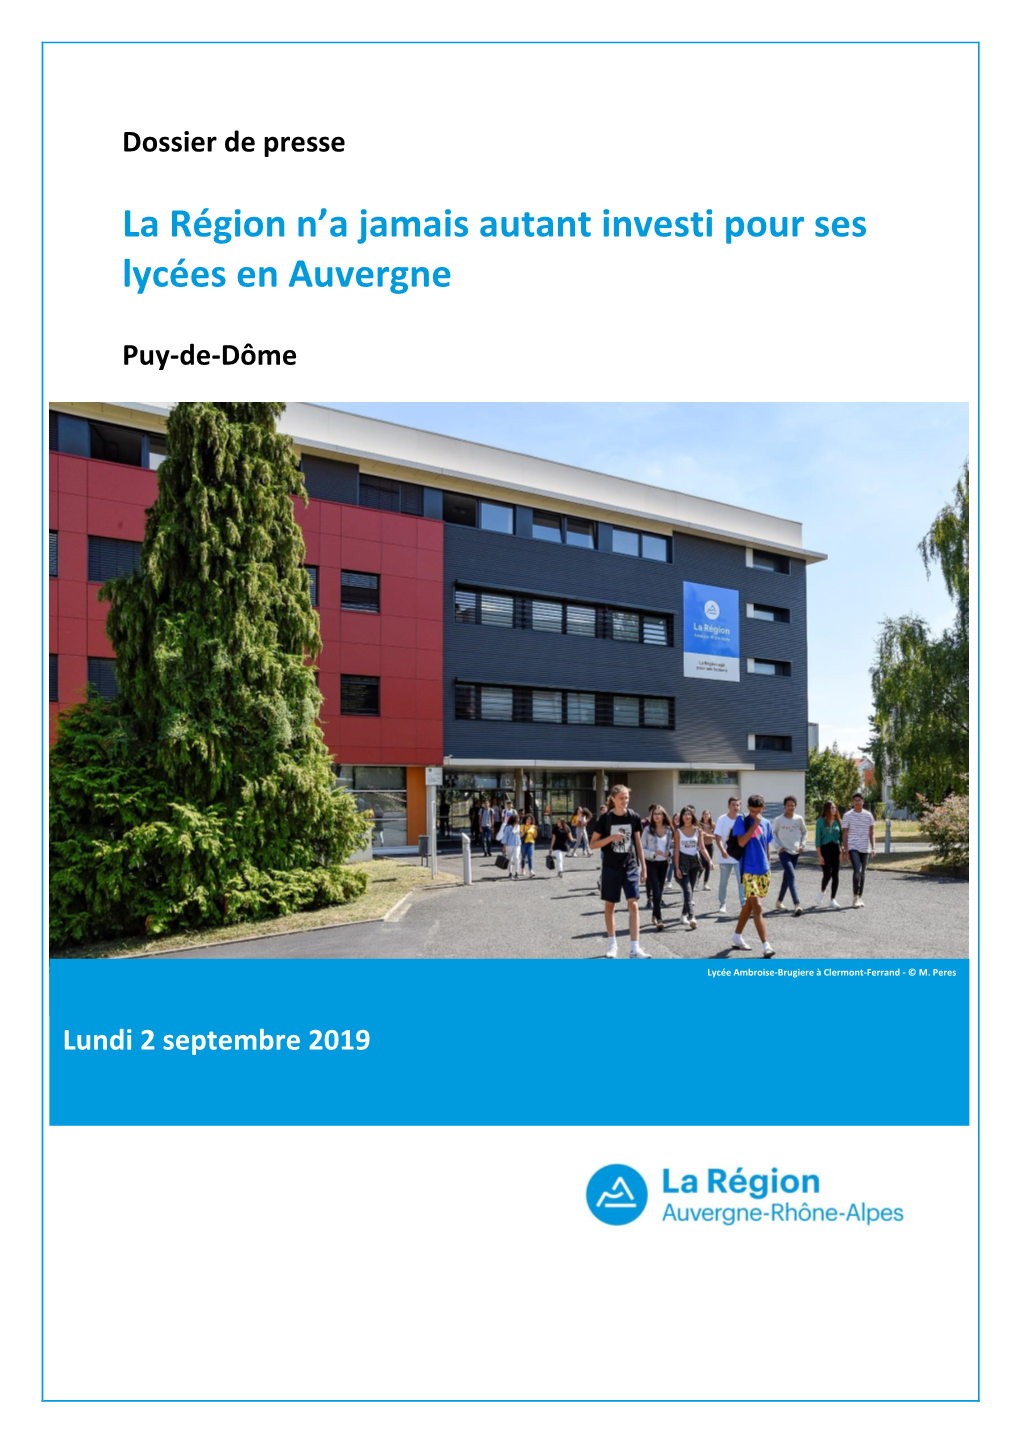 La Région N'a Jamais Autant Investi Pour Ses Lycées En Auvergne